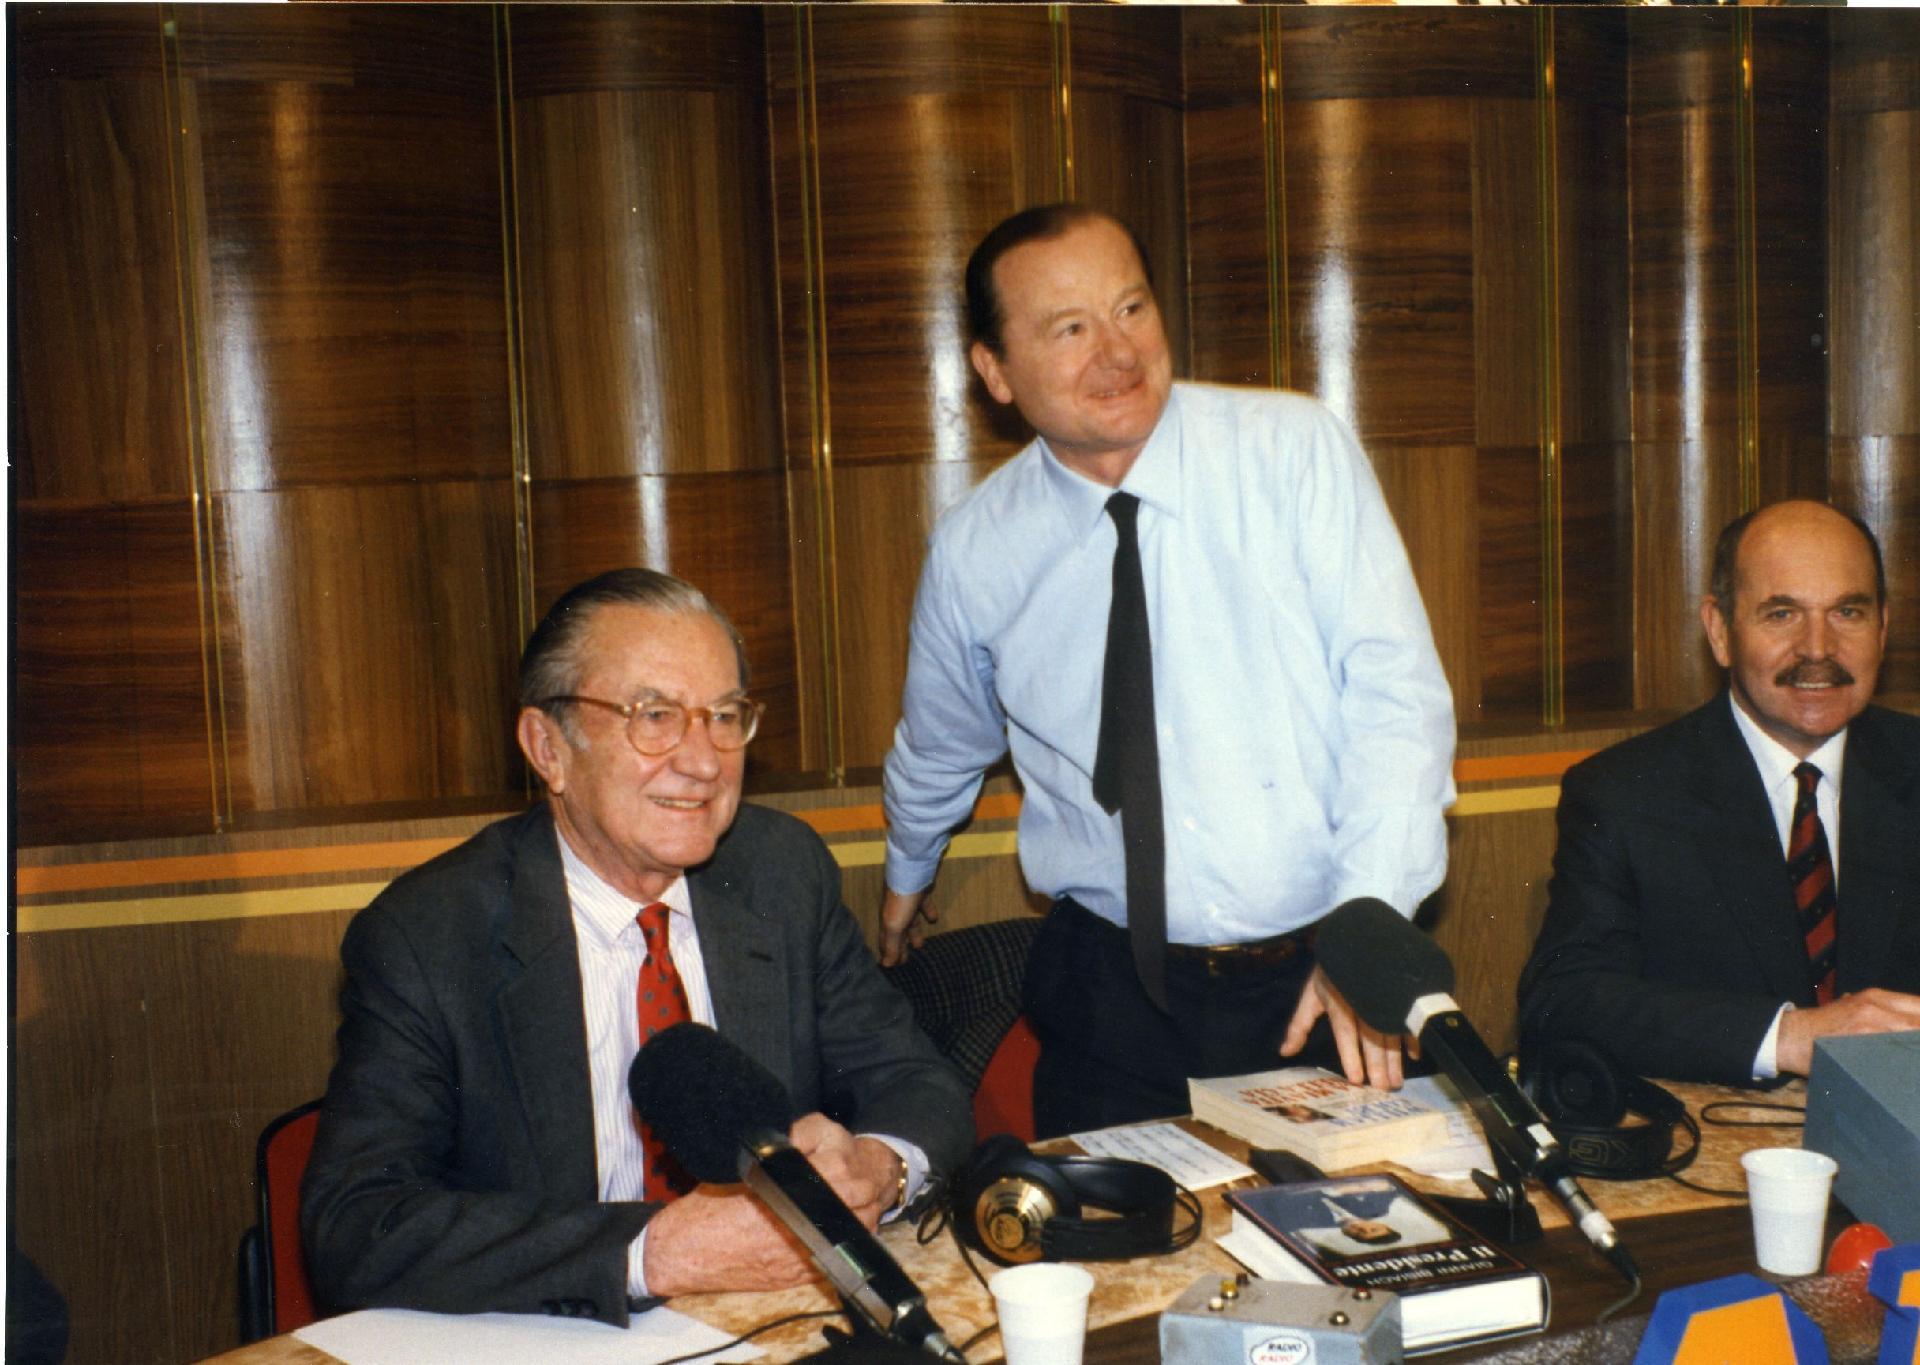 Gianni Bisiach con William Colby, ex direttore della CIA e un generale dei Bersaglieri, ex generale del SISMI, a &quot;Radio anch&apos;io&quot; nello studio 8 di via Asiago n. 10 a Roma nel novembre 1992